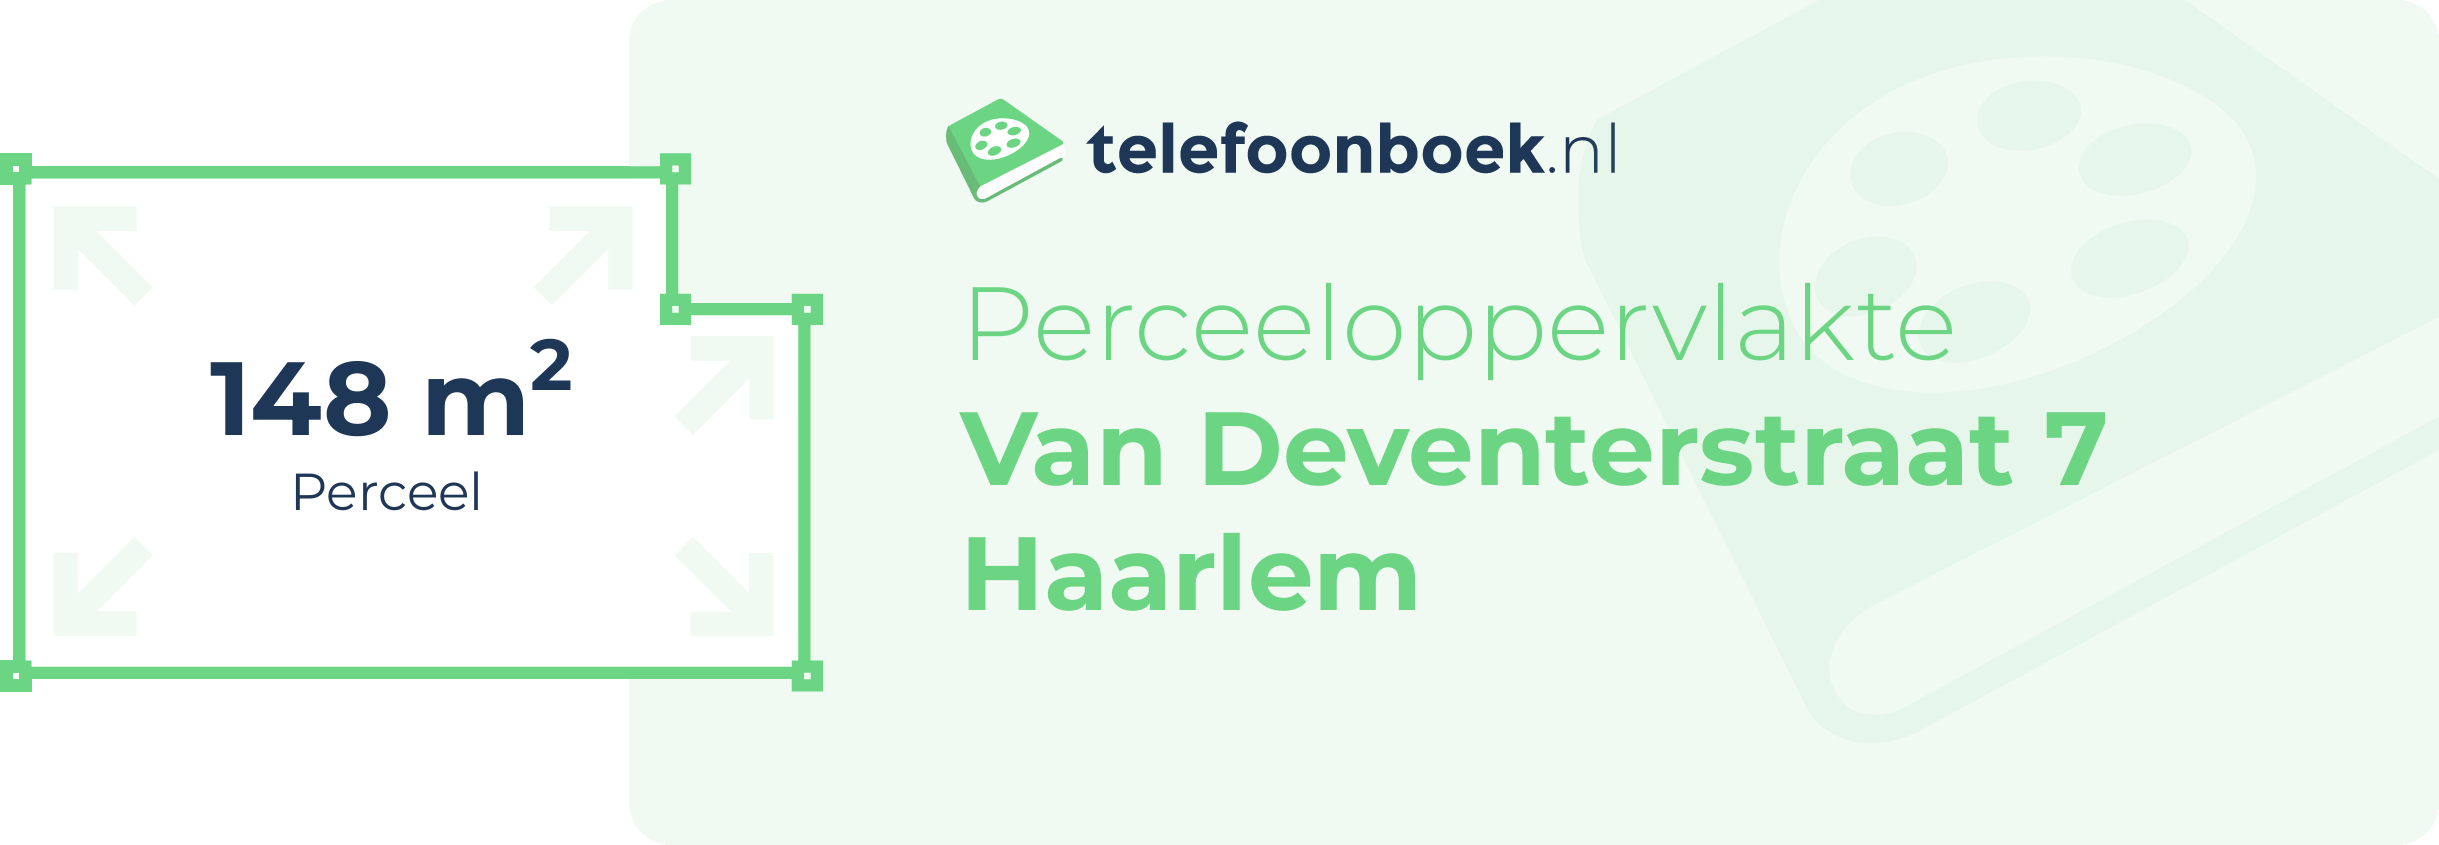 Perceeloppervlakte Van Deventerstraat 7 Haarlem